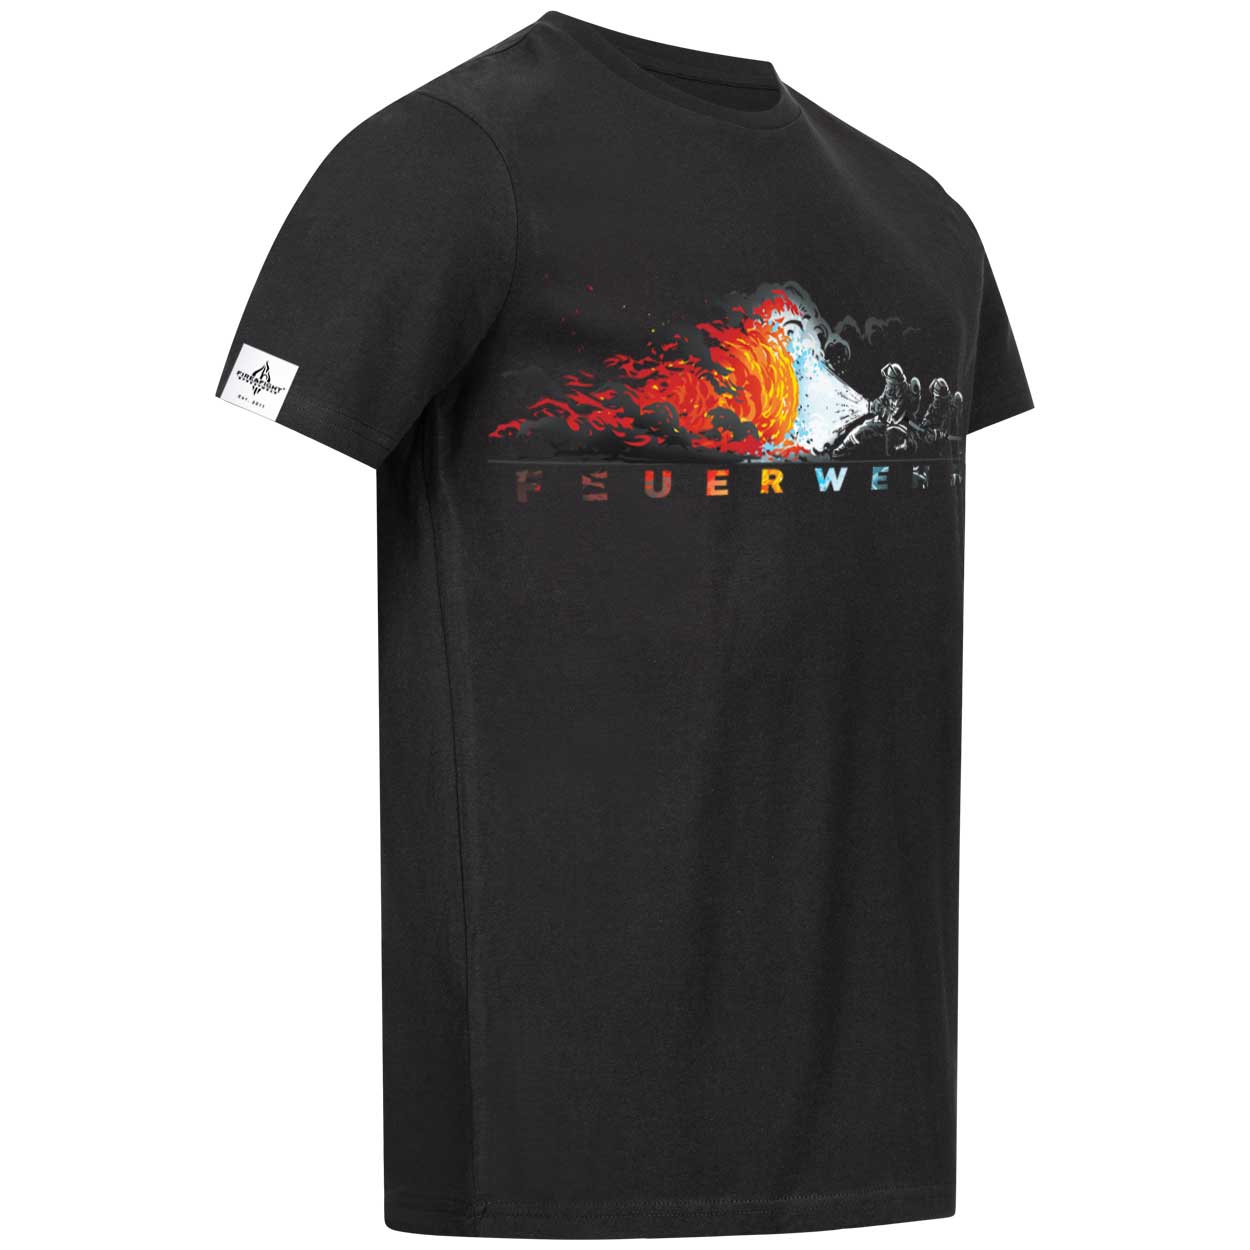 Feuerwehr Angriffstrupp Design - Männer T-Shirt